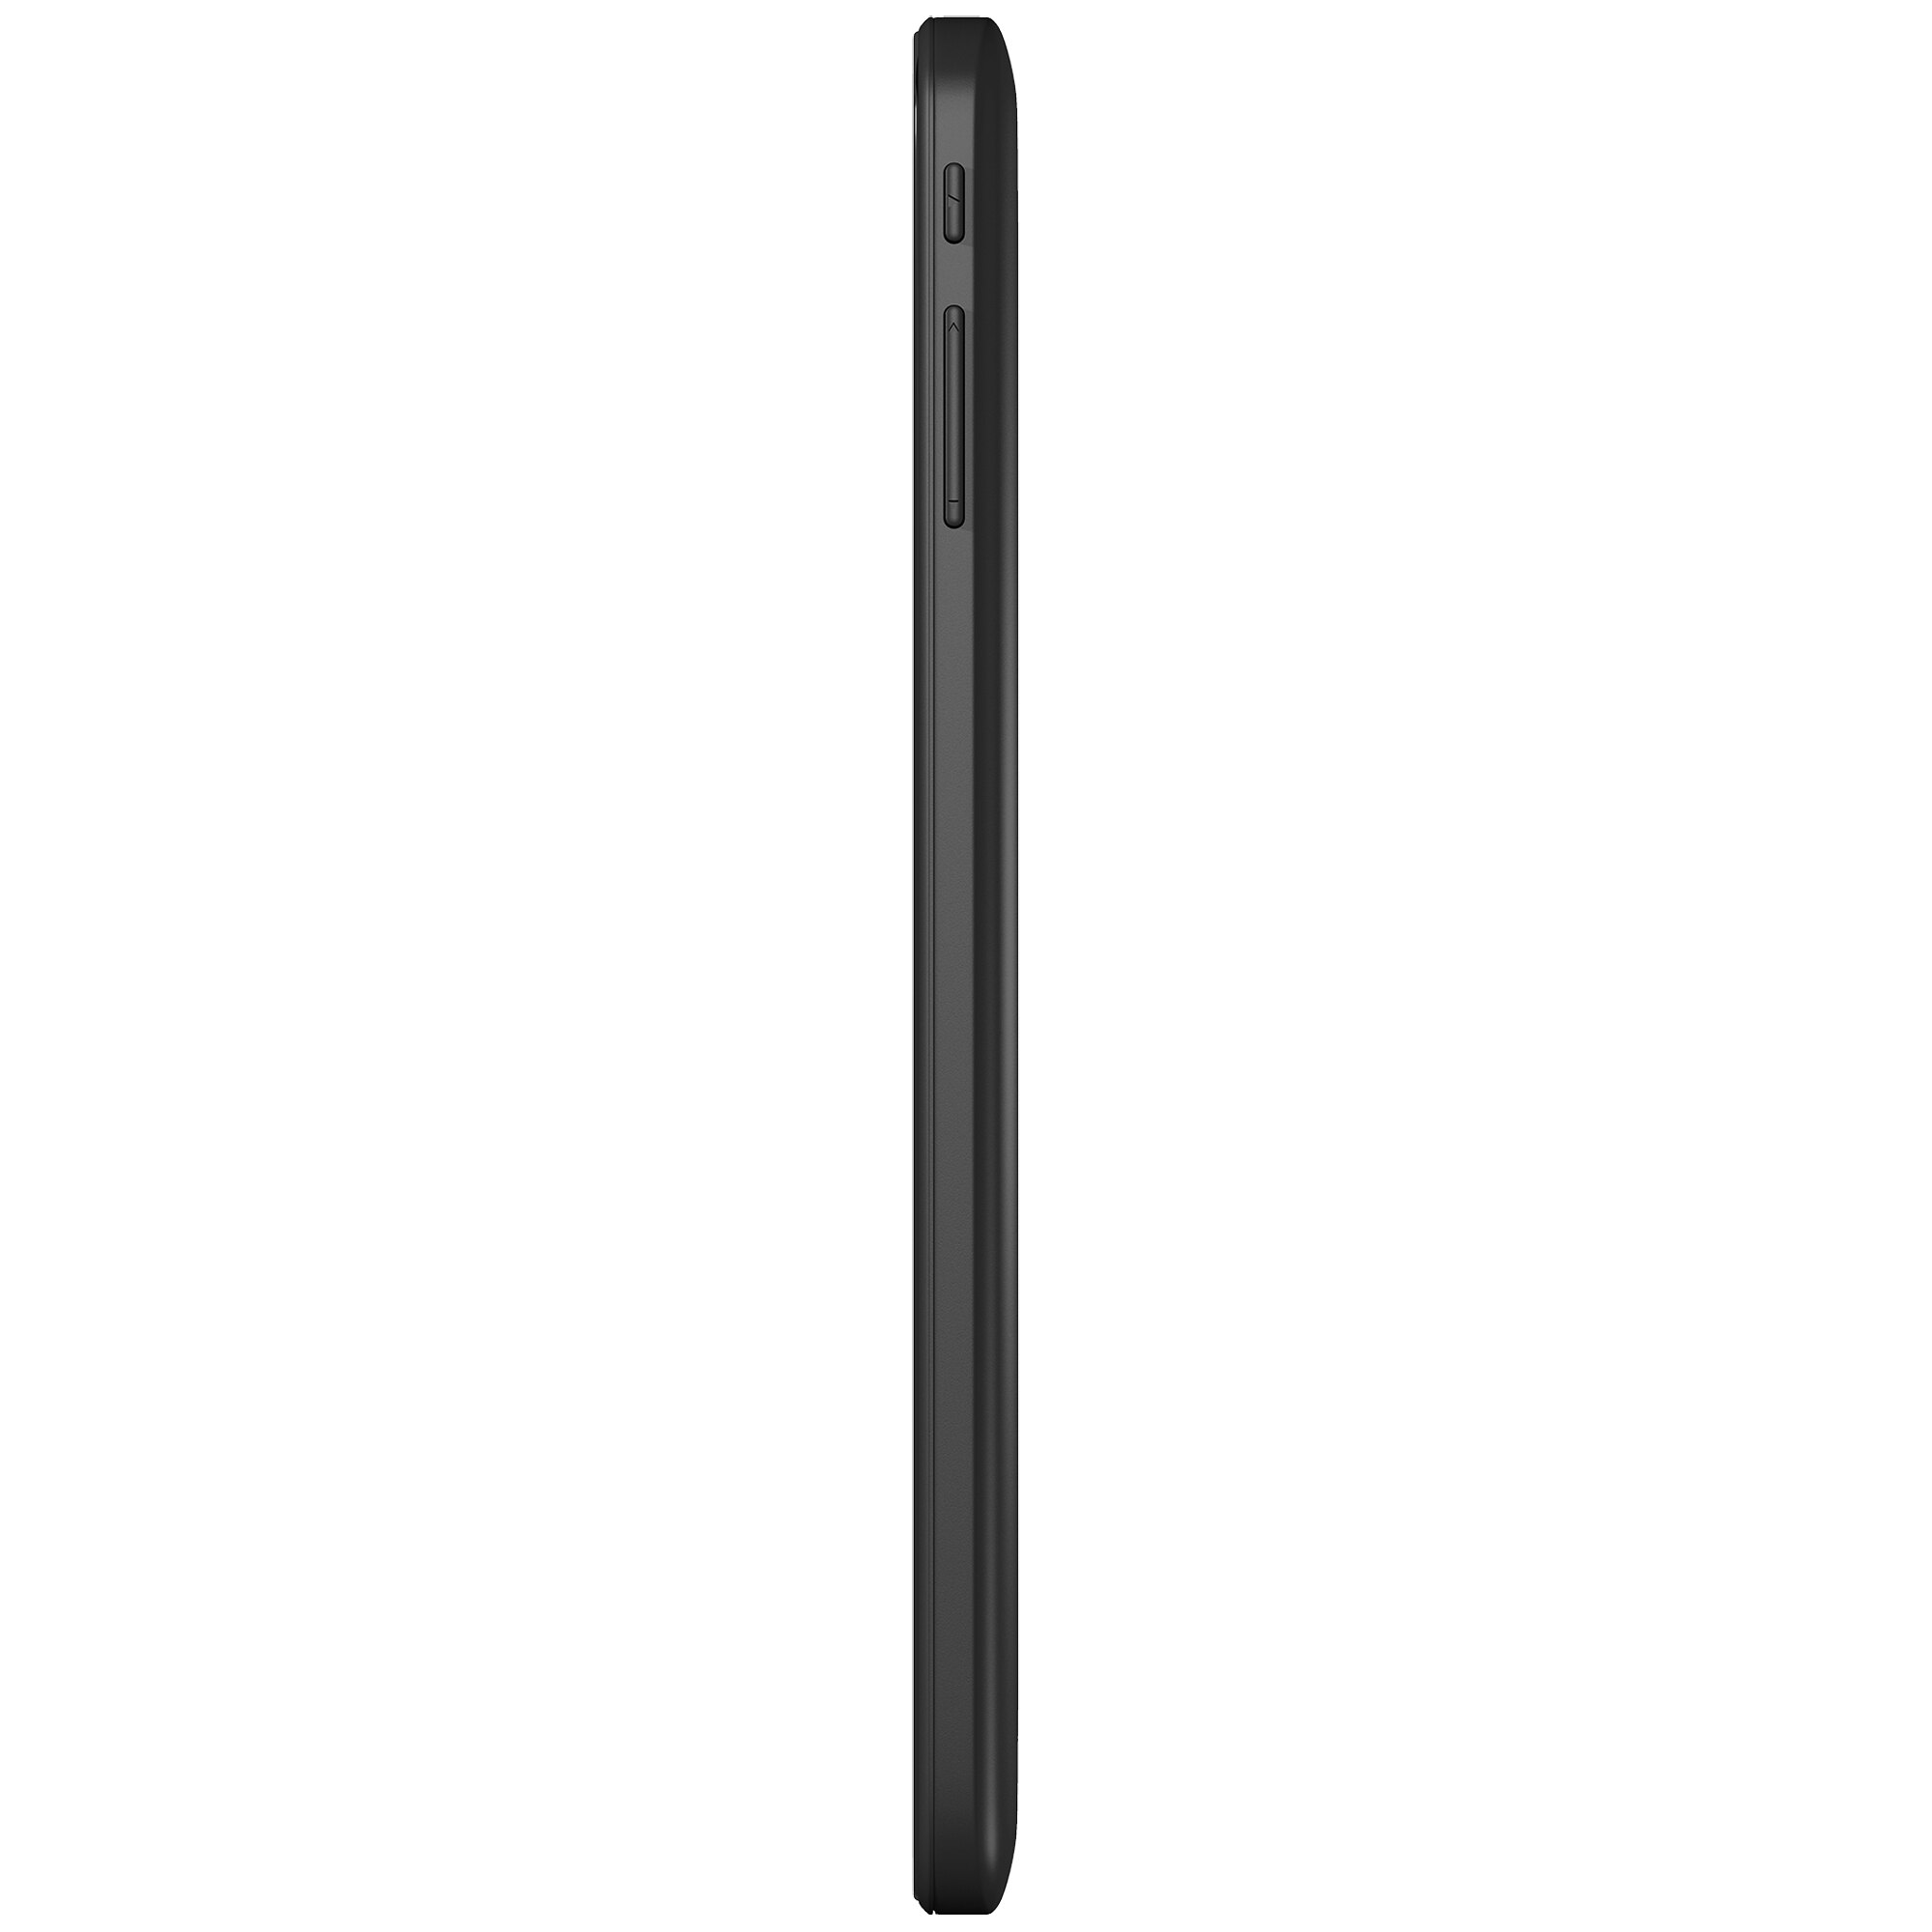 Tableta Vonino Onyx Z cu Dual-Core Cortex A7 1.30GHz, 1GB DDR3, 8GB, 3G, GPS, Bluetooth, Wi-Fi, Android 4.2 Jelly Bean, Dark Grey - eMAG.ro